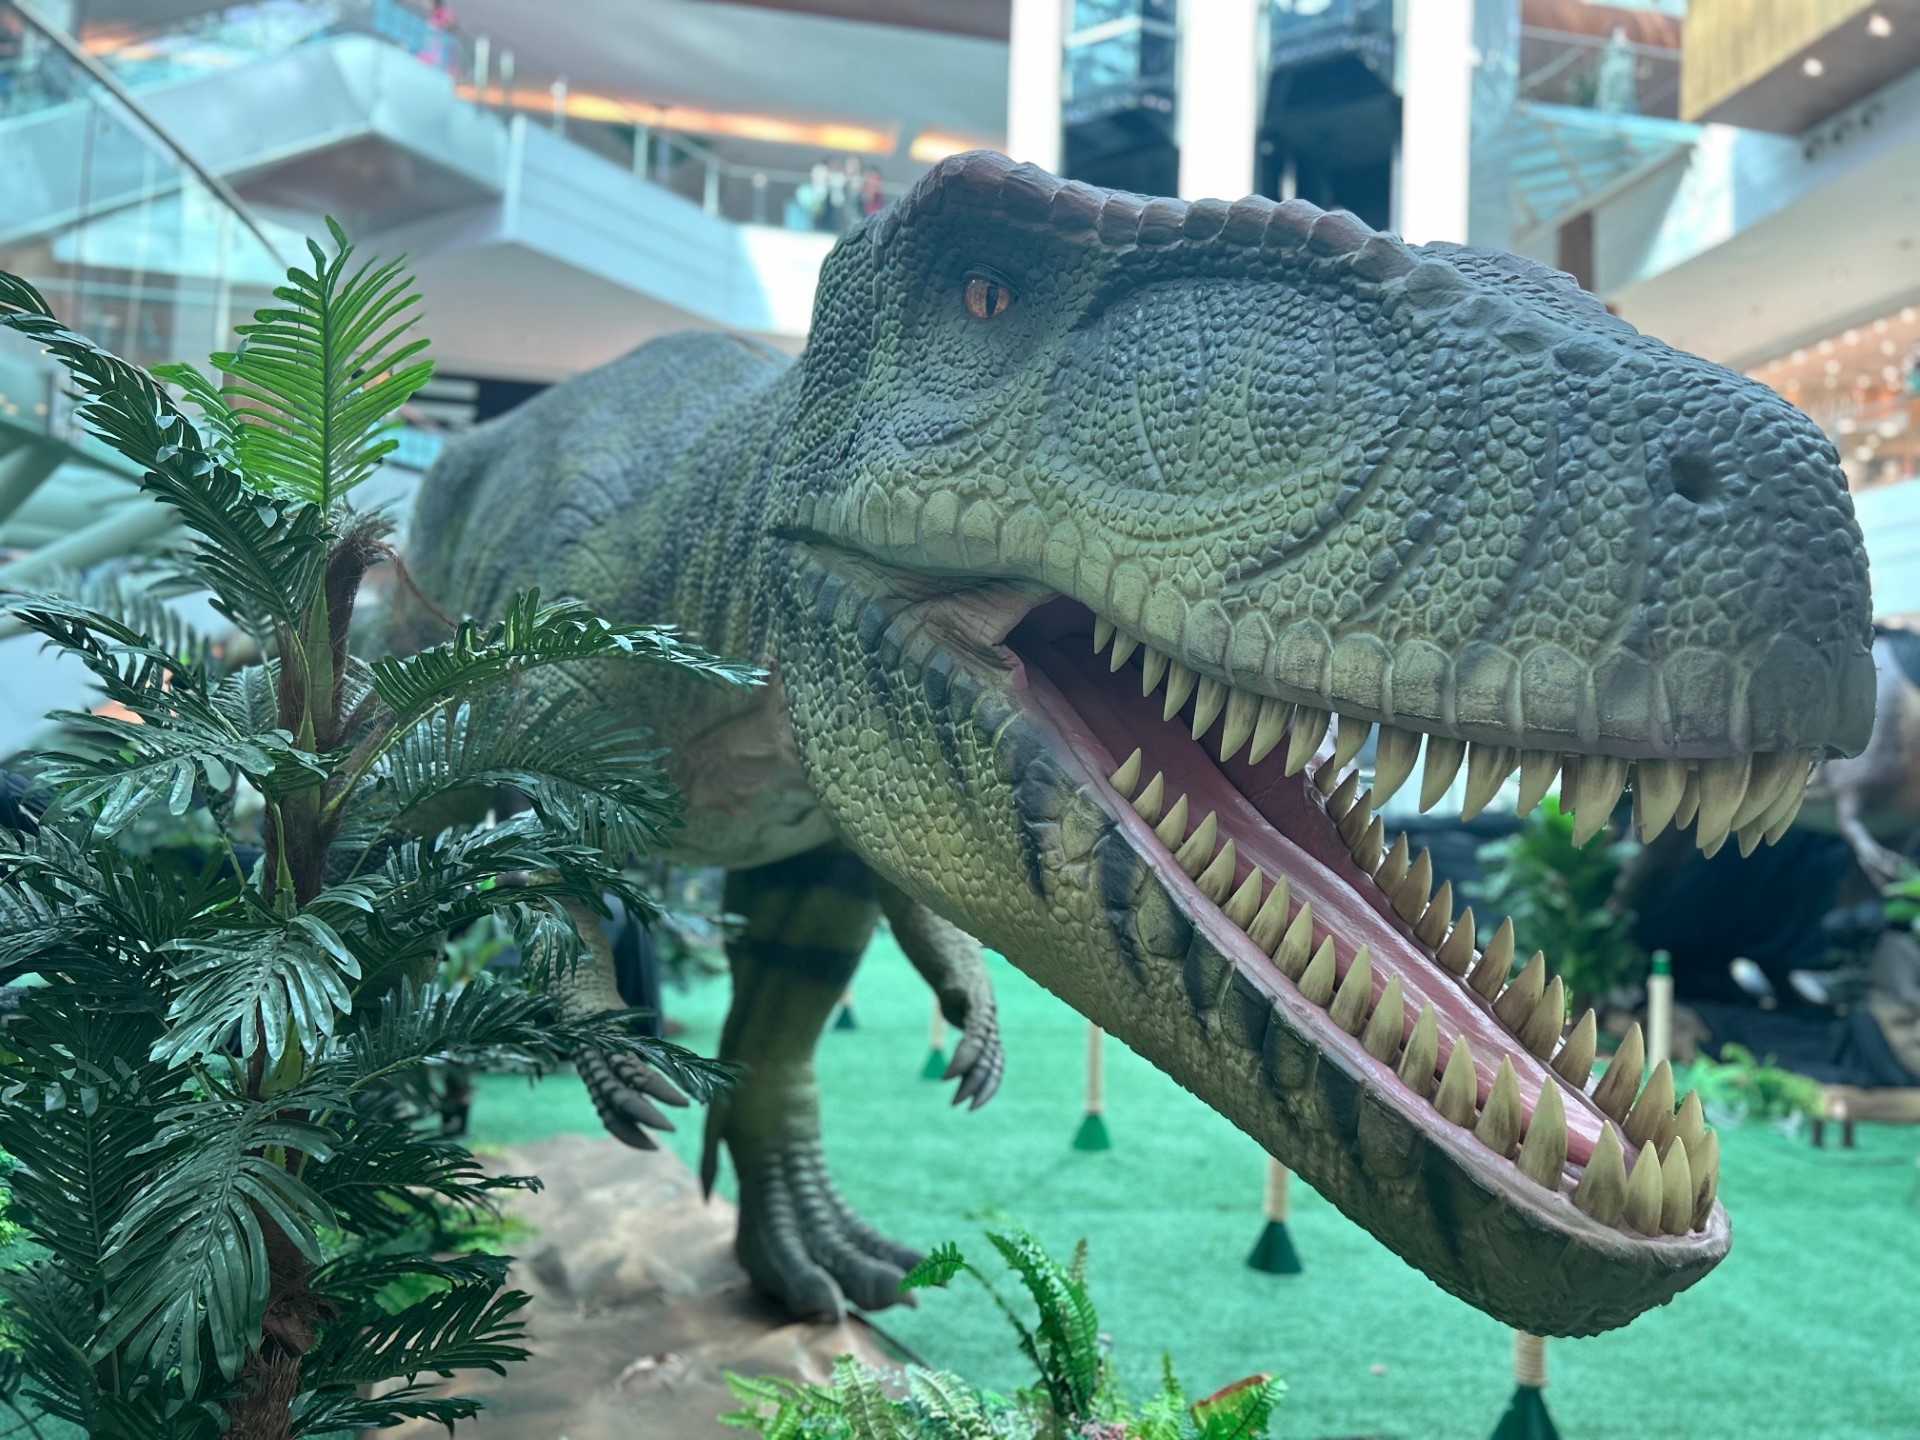 

Shopping de Salvador recebe exposição com dinossauros em tamanho real